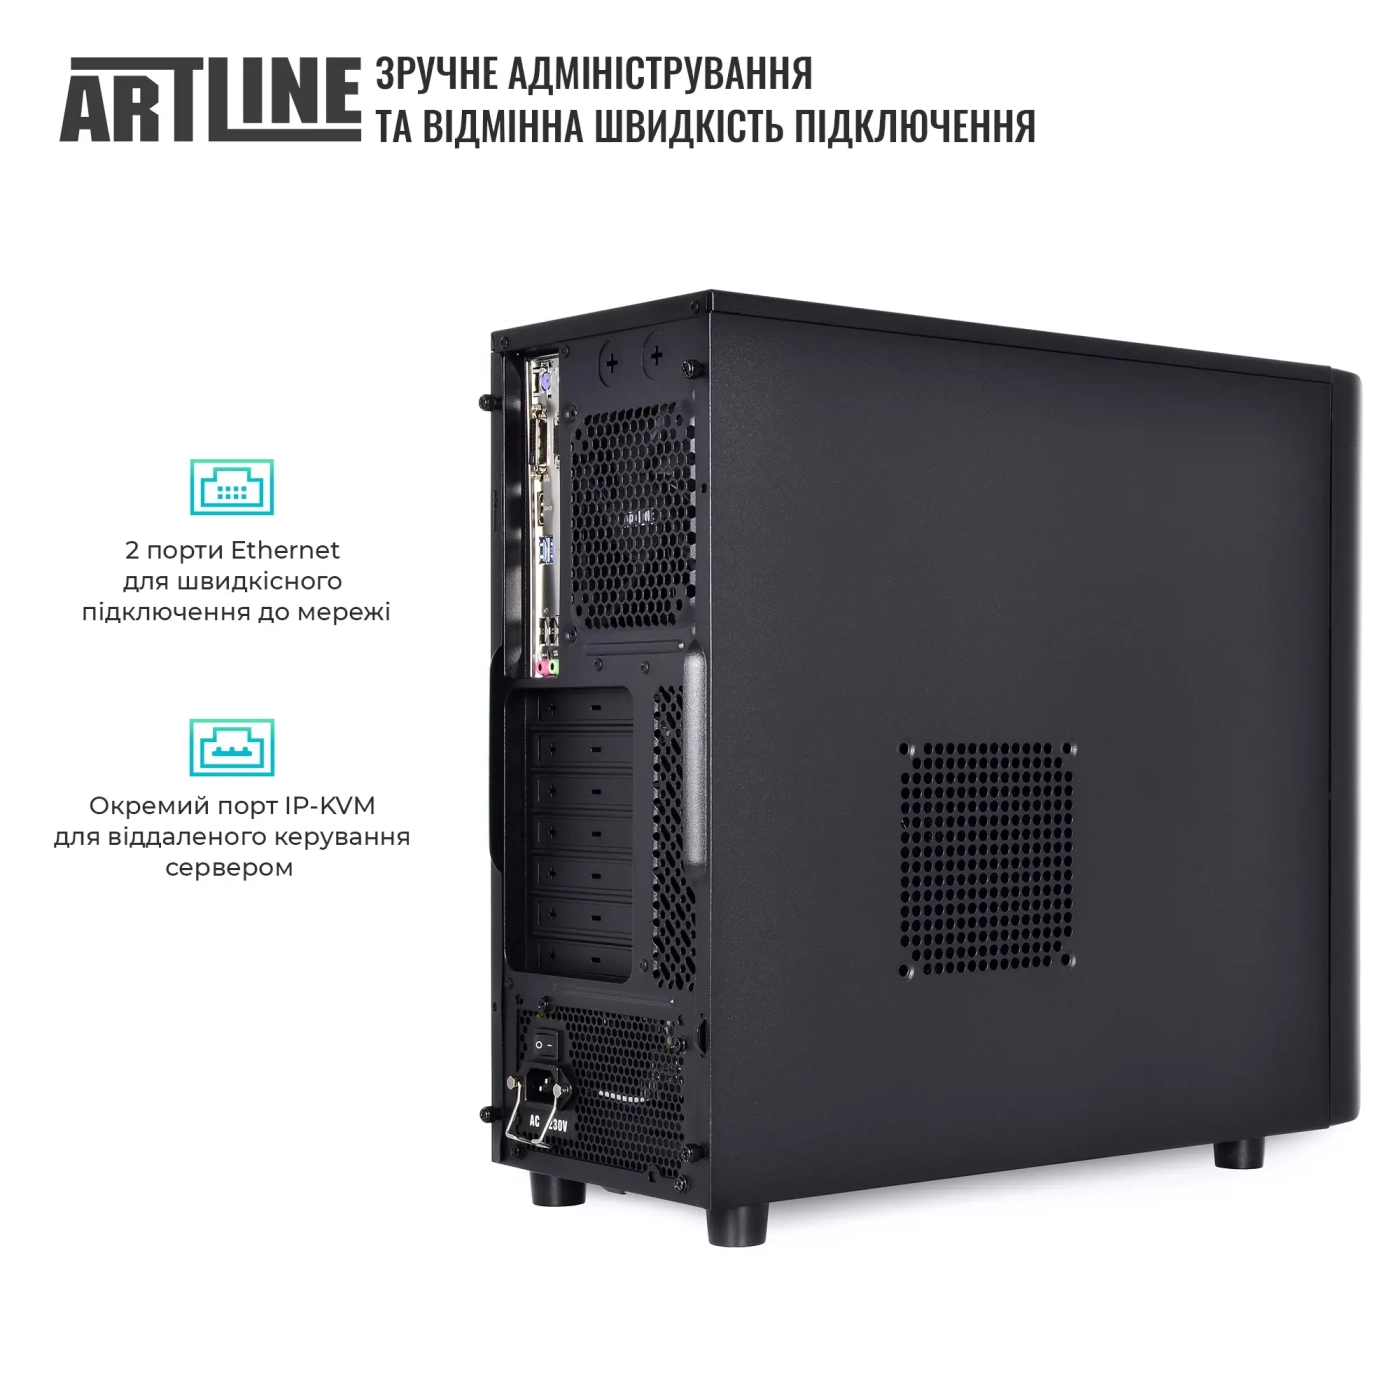 Купить Сервер ARTLINE Business T36 (T36v21) - фото 4